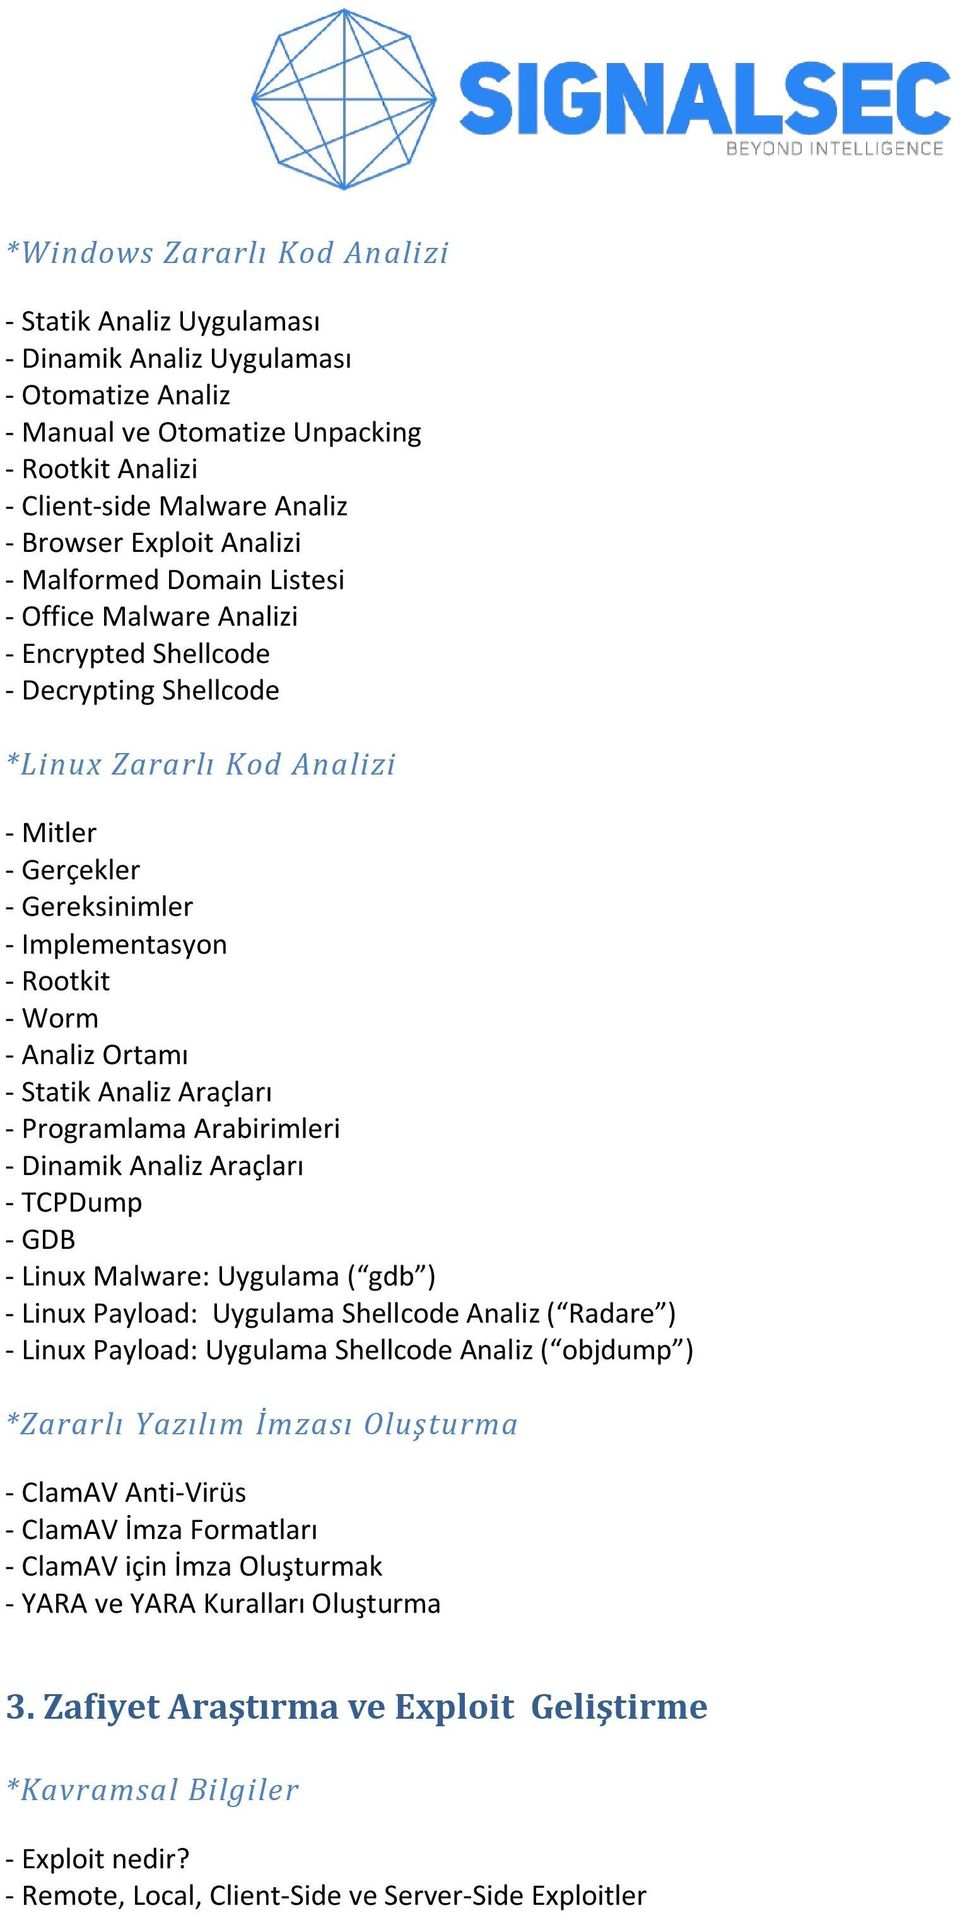 Worm - Analiz Ortamı - Statik Analiz Araçları - Programlama Arabirimleri - Dinamik Analiz Araçları - TCPDump - GDB - Linux Malware: Uygulama ( gdb ) - Linux Payload: Uygulama Shellcode Analiz (